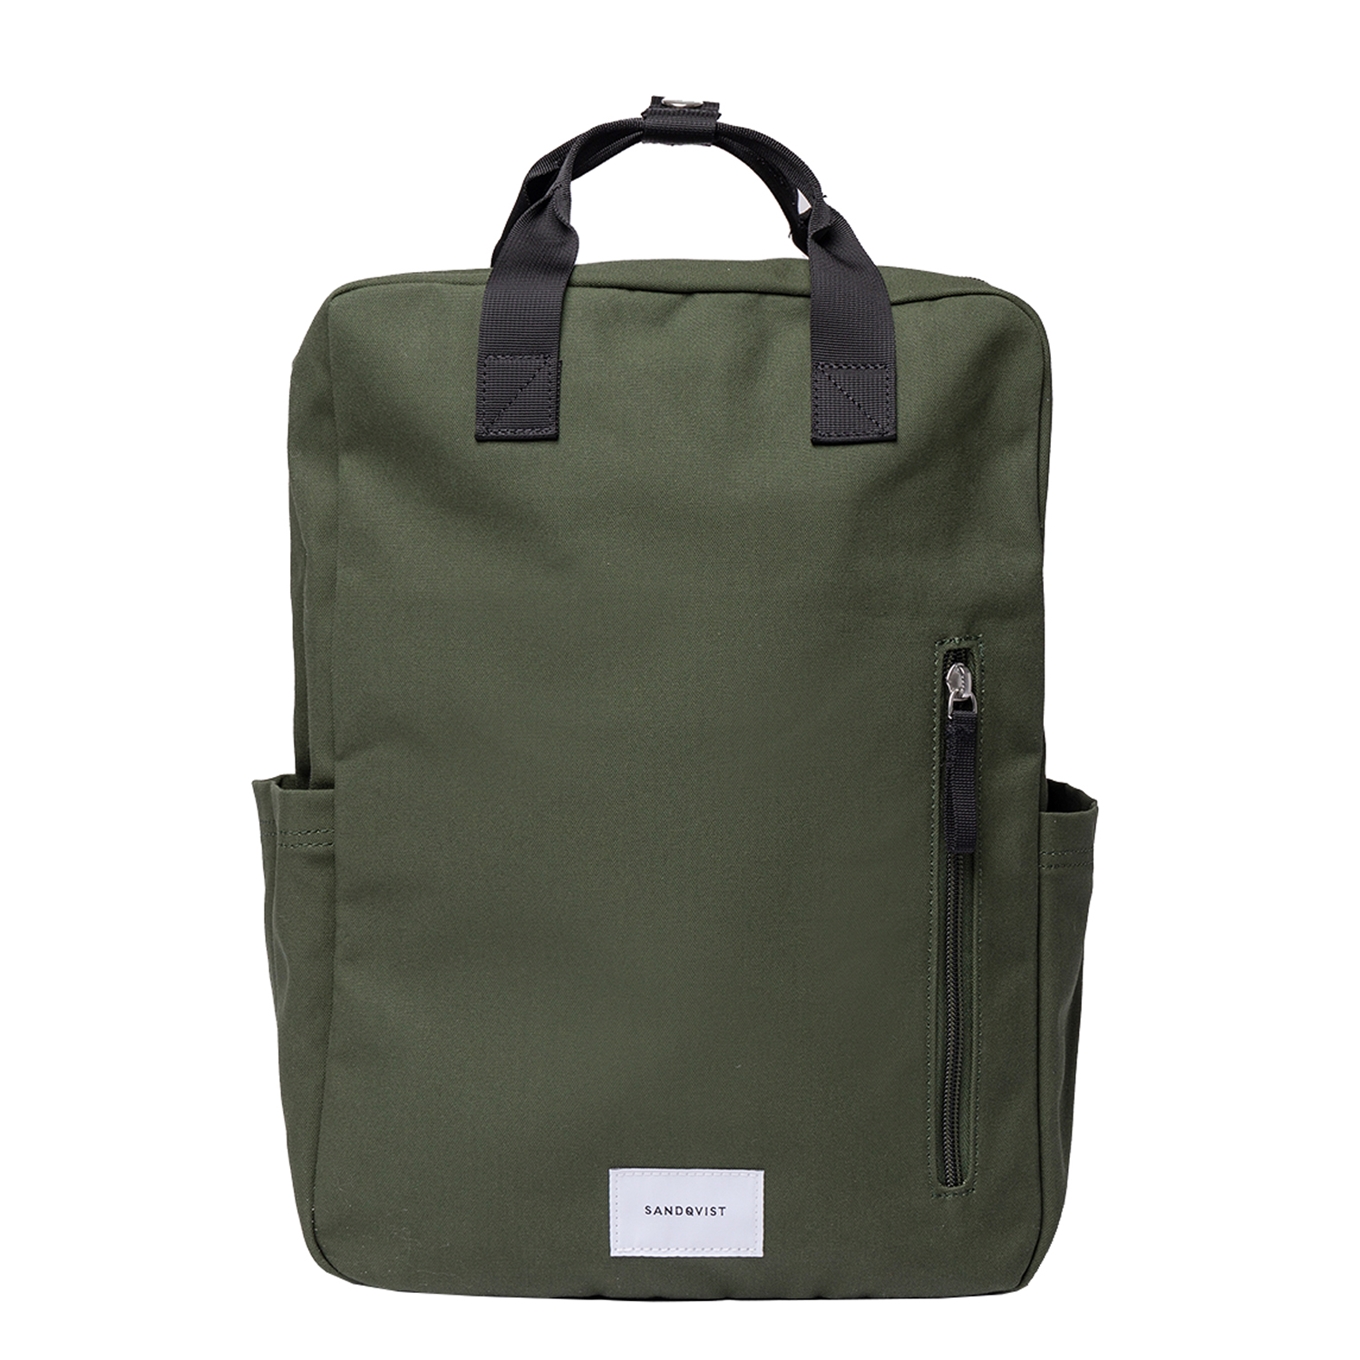 Sandqvist Knut Backpack II dawn green backpack